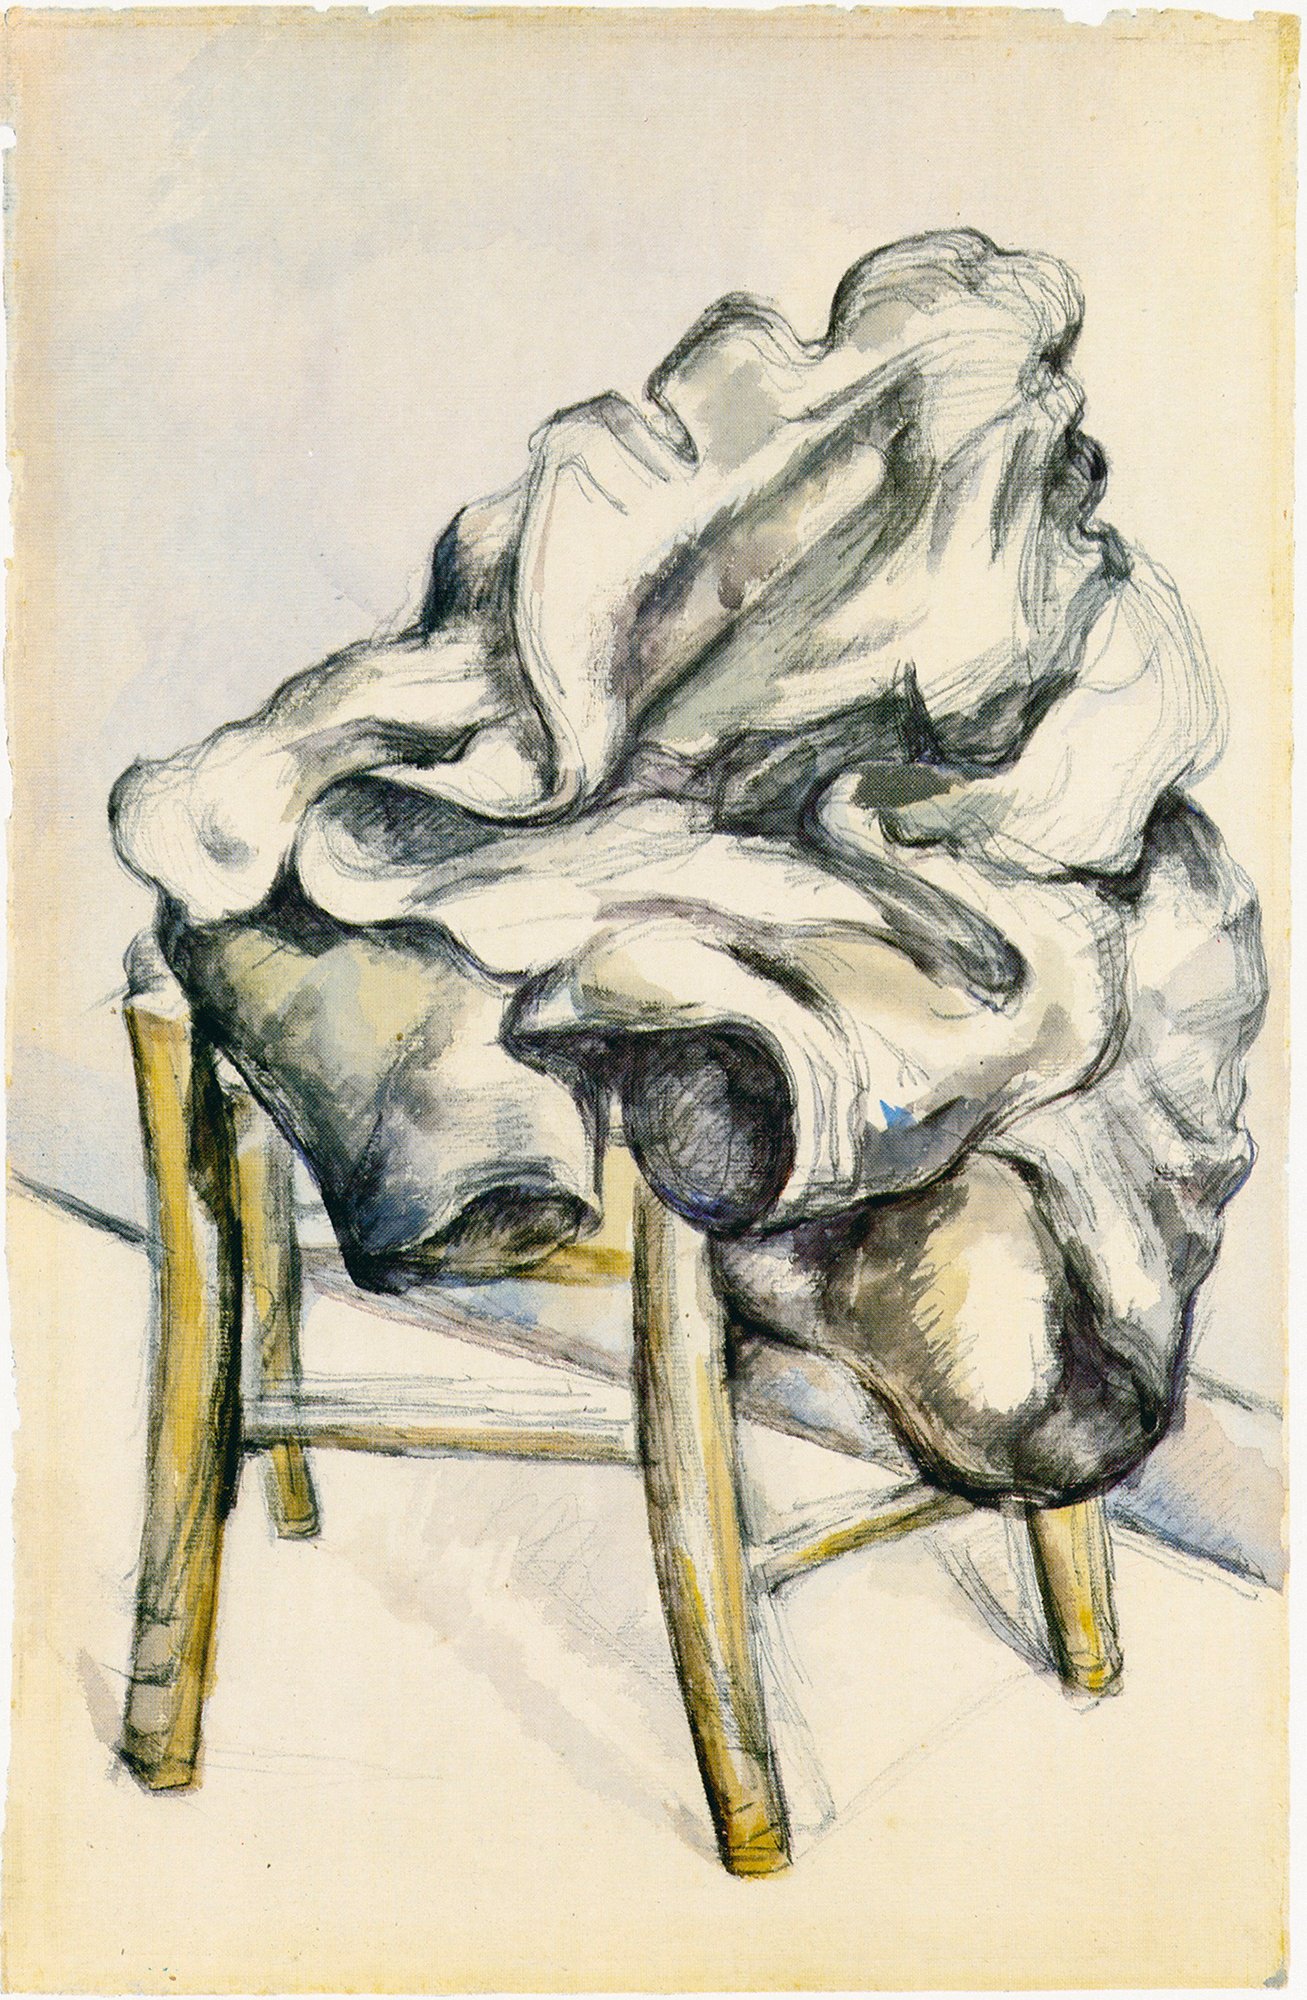 Abbildung des Werks "Jacke auf einem Hocker" des Künstlers Paul Cézanne, das in der Ausstellung "Cézanne Metamorphosen" vom 28. Oktober 2017 bis 11. Februar 2018 in der Staatlichen Kunsthalle Karlsruhe zu sehen war.